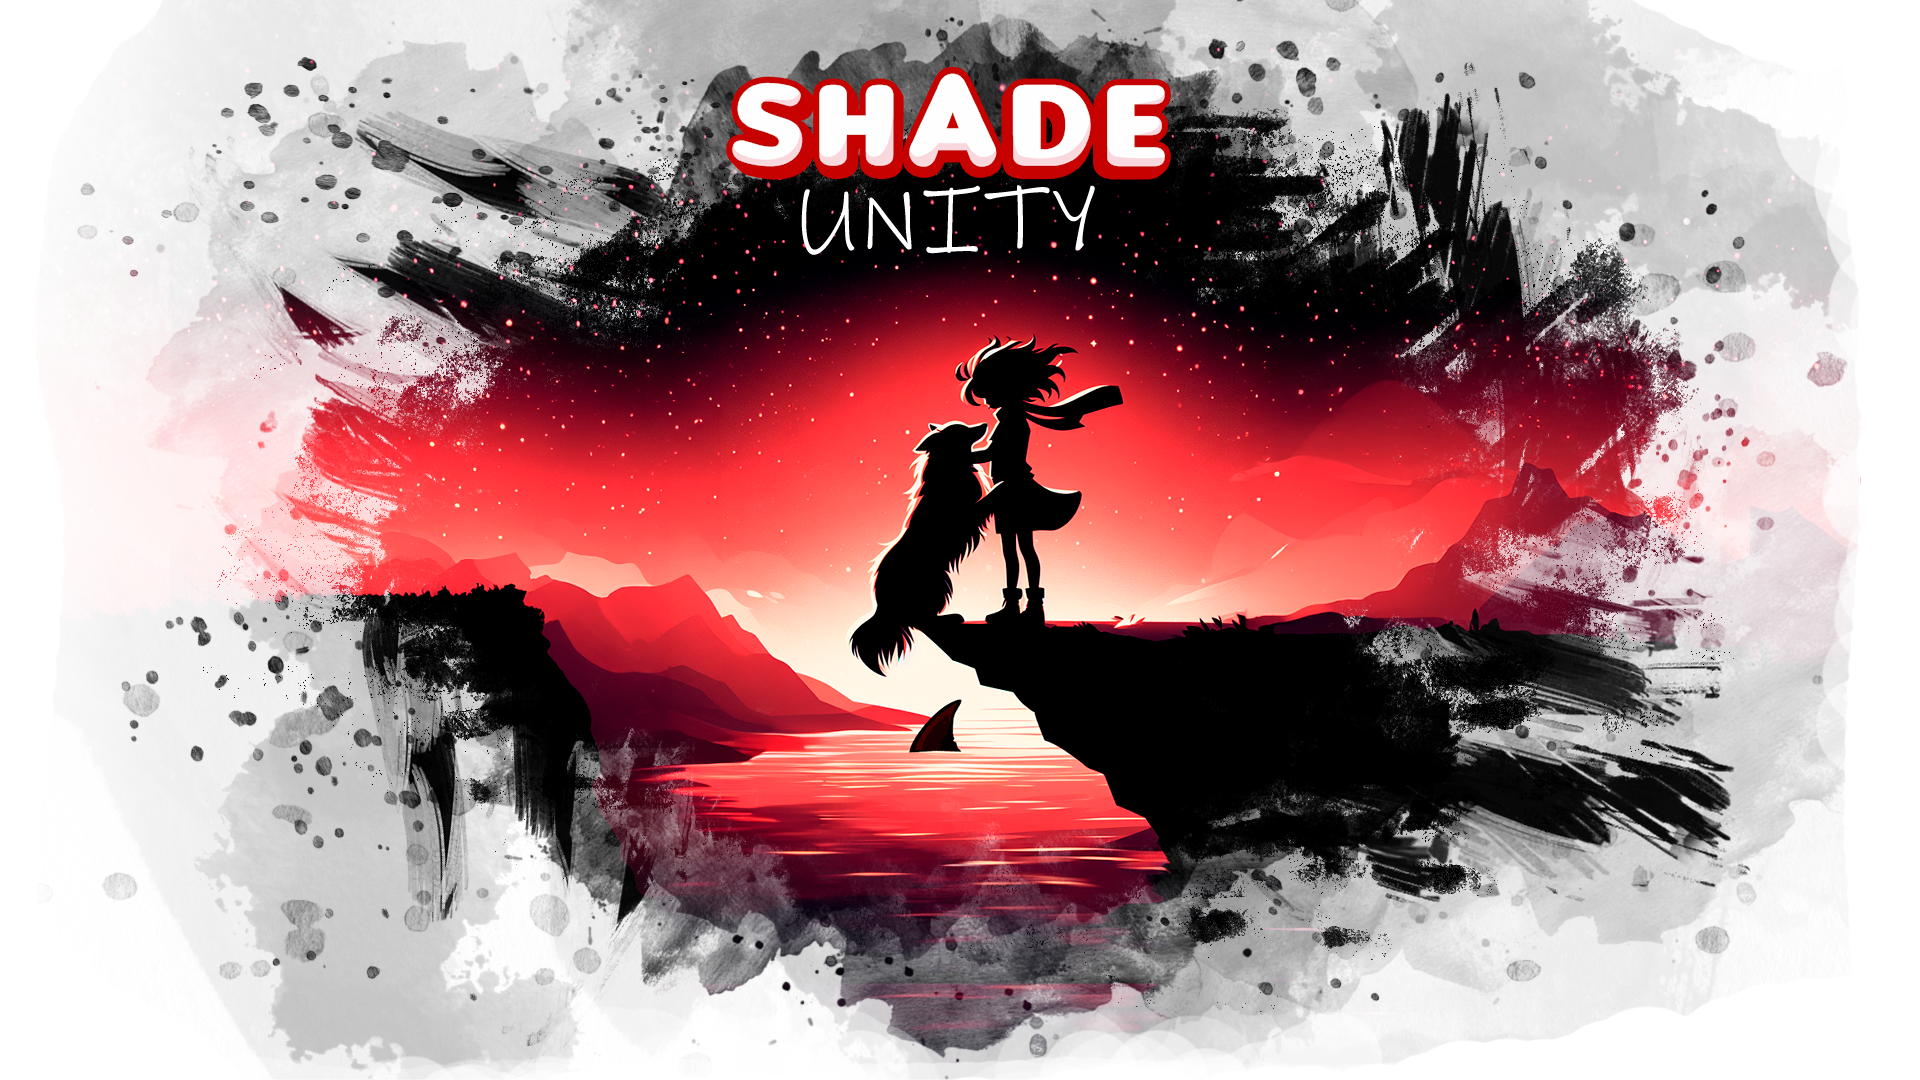 Shade Unity